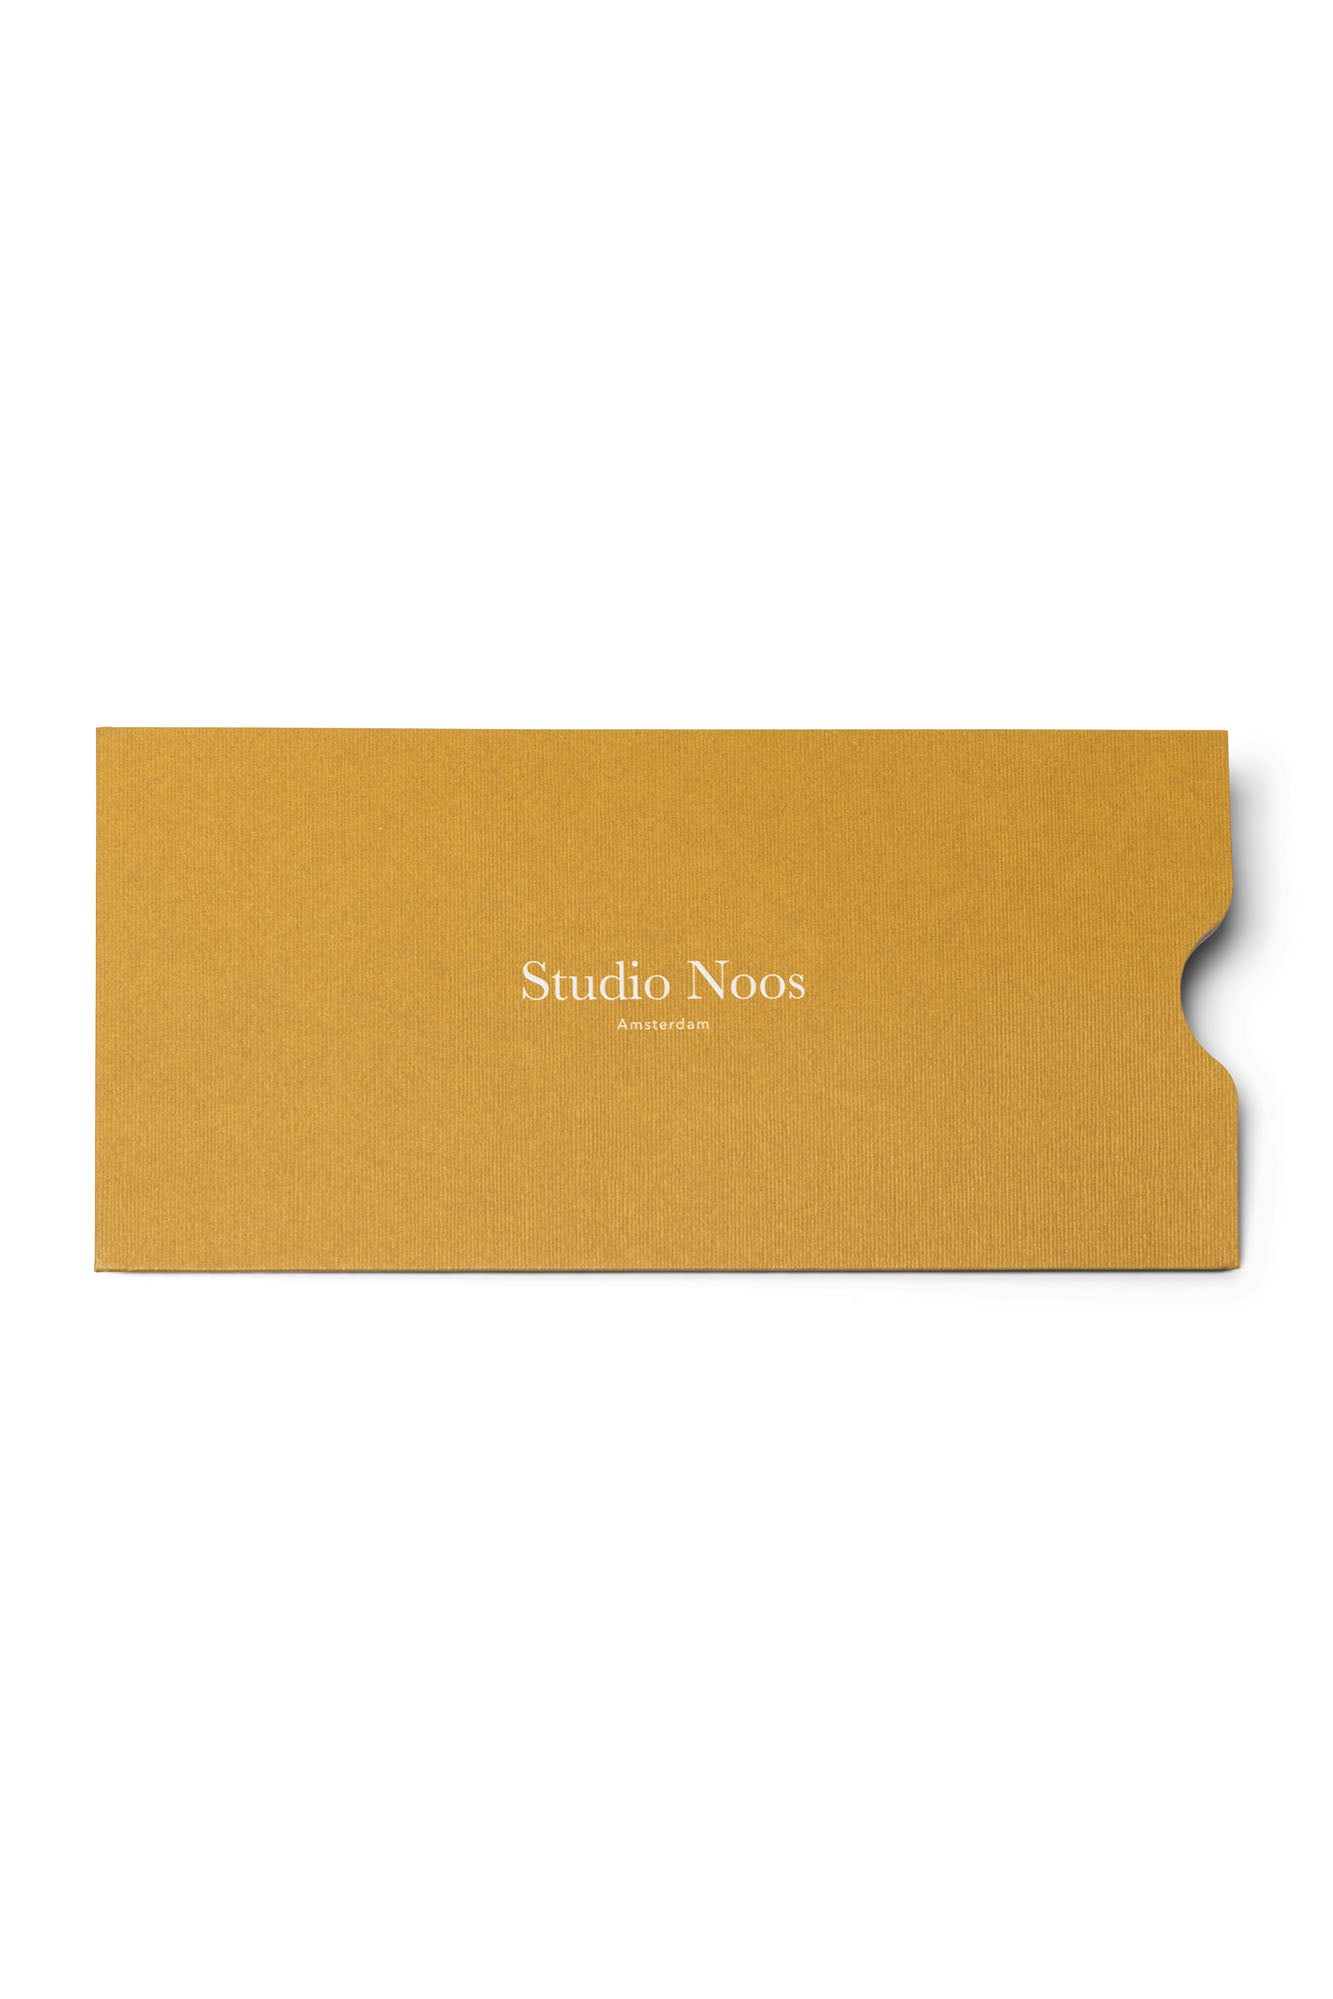 giftcard studio noos